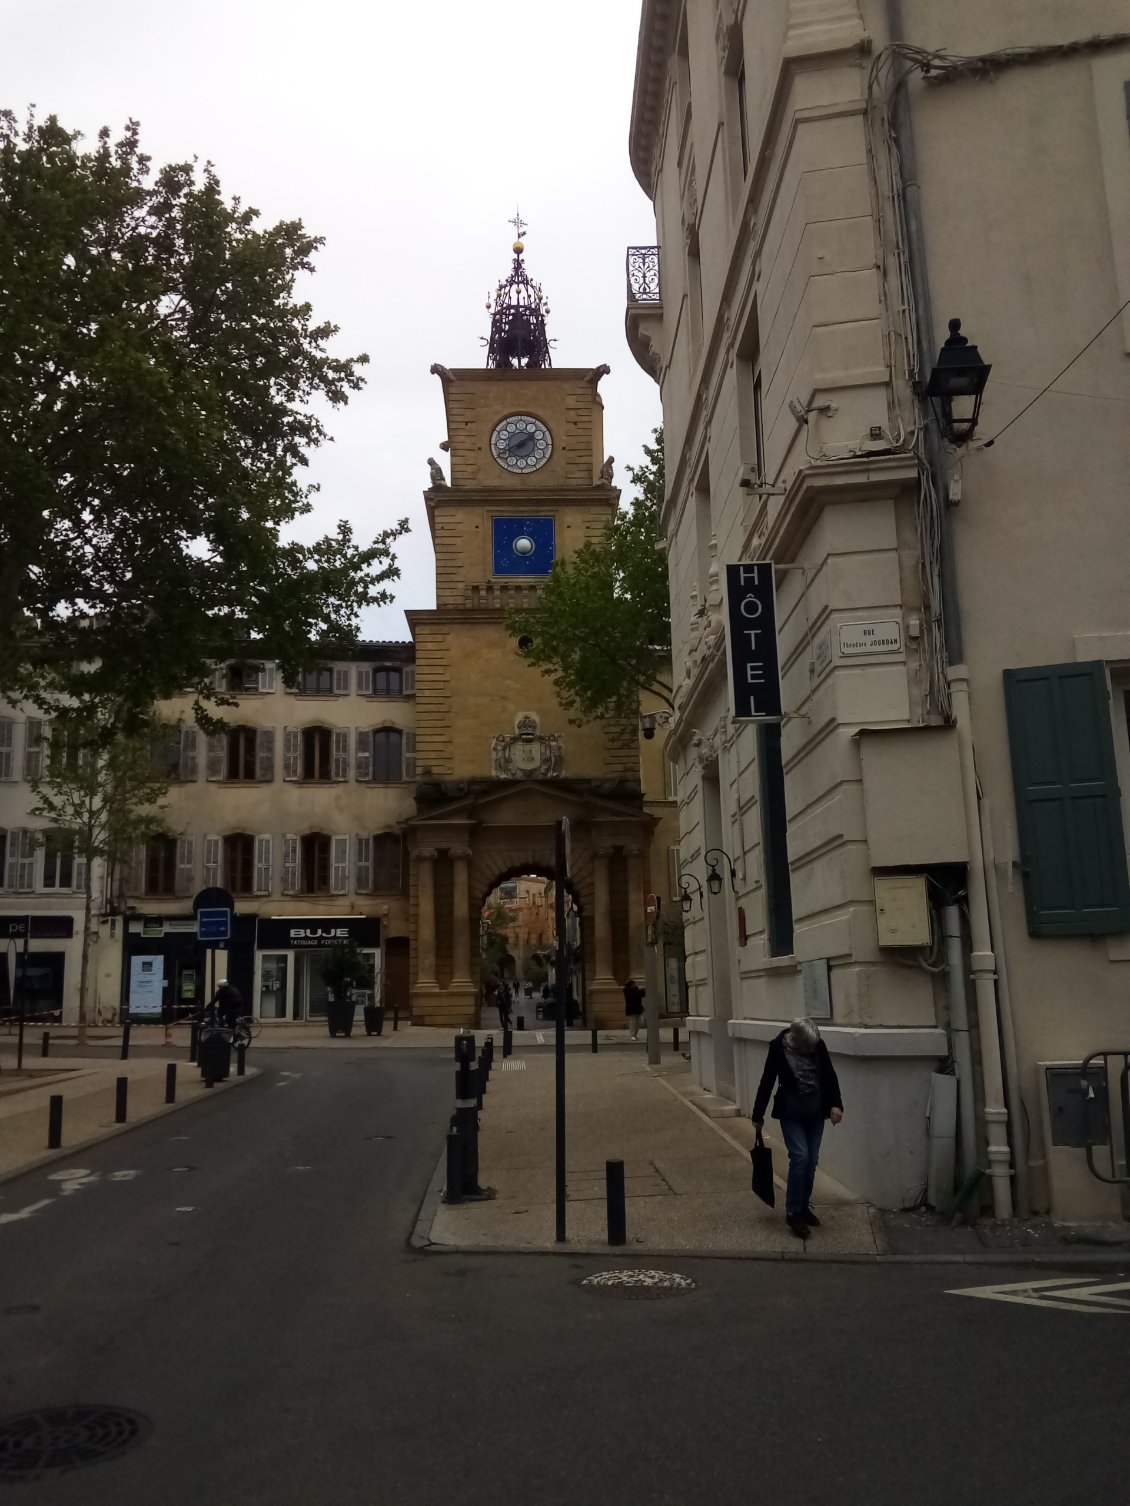 Sa tour à horloge qui marque l'une des entrées de la vieille ville.